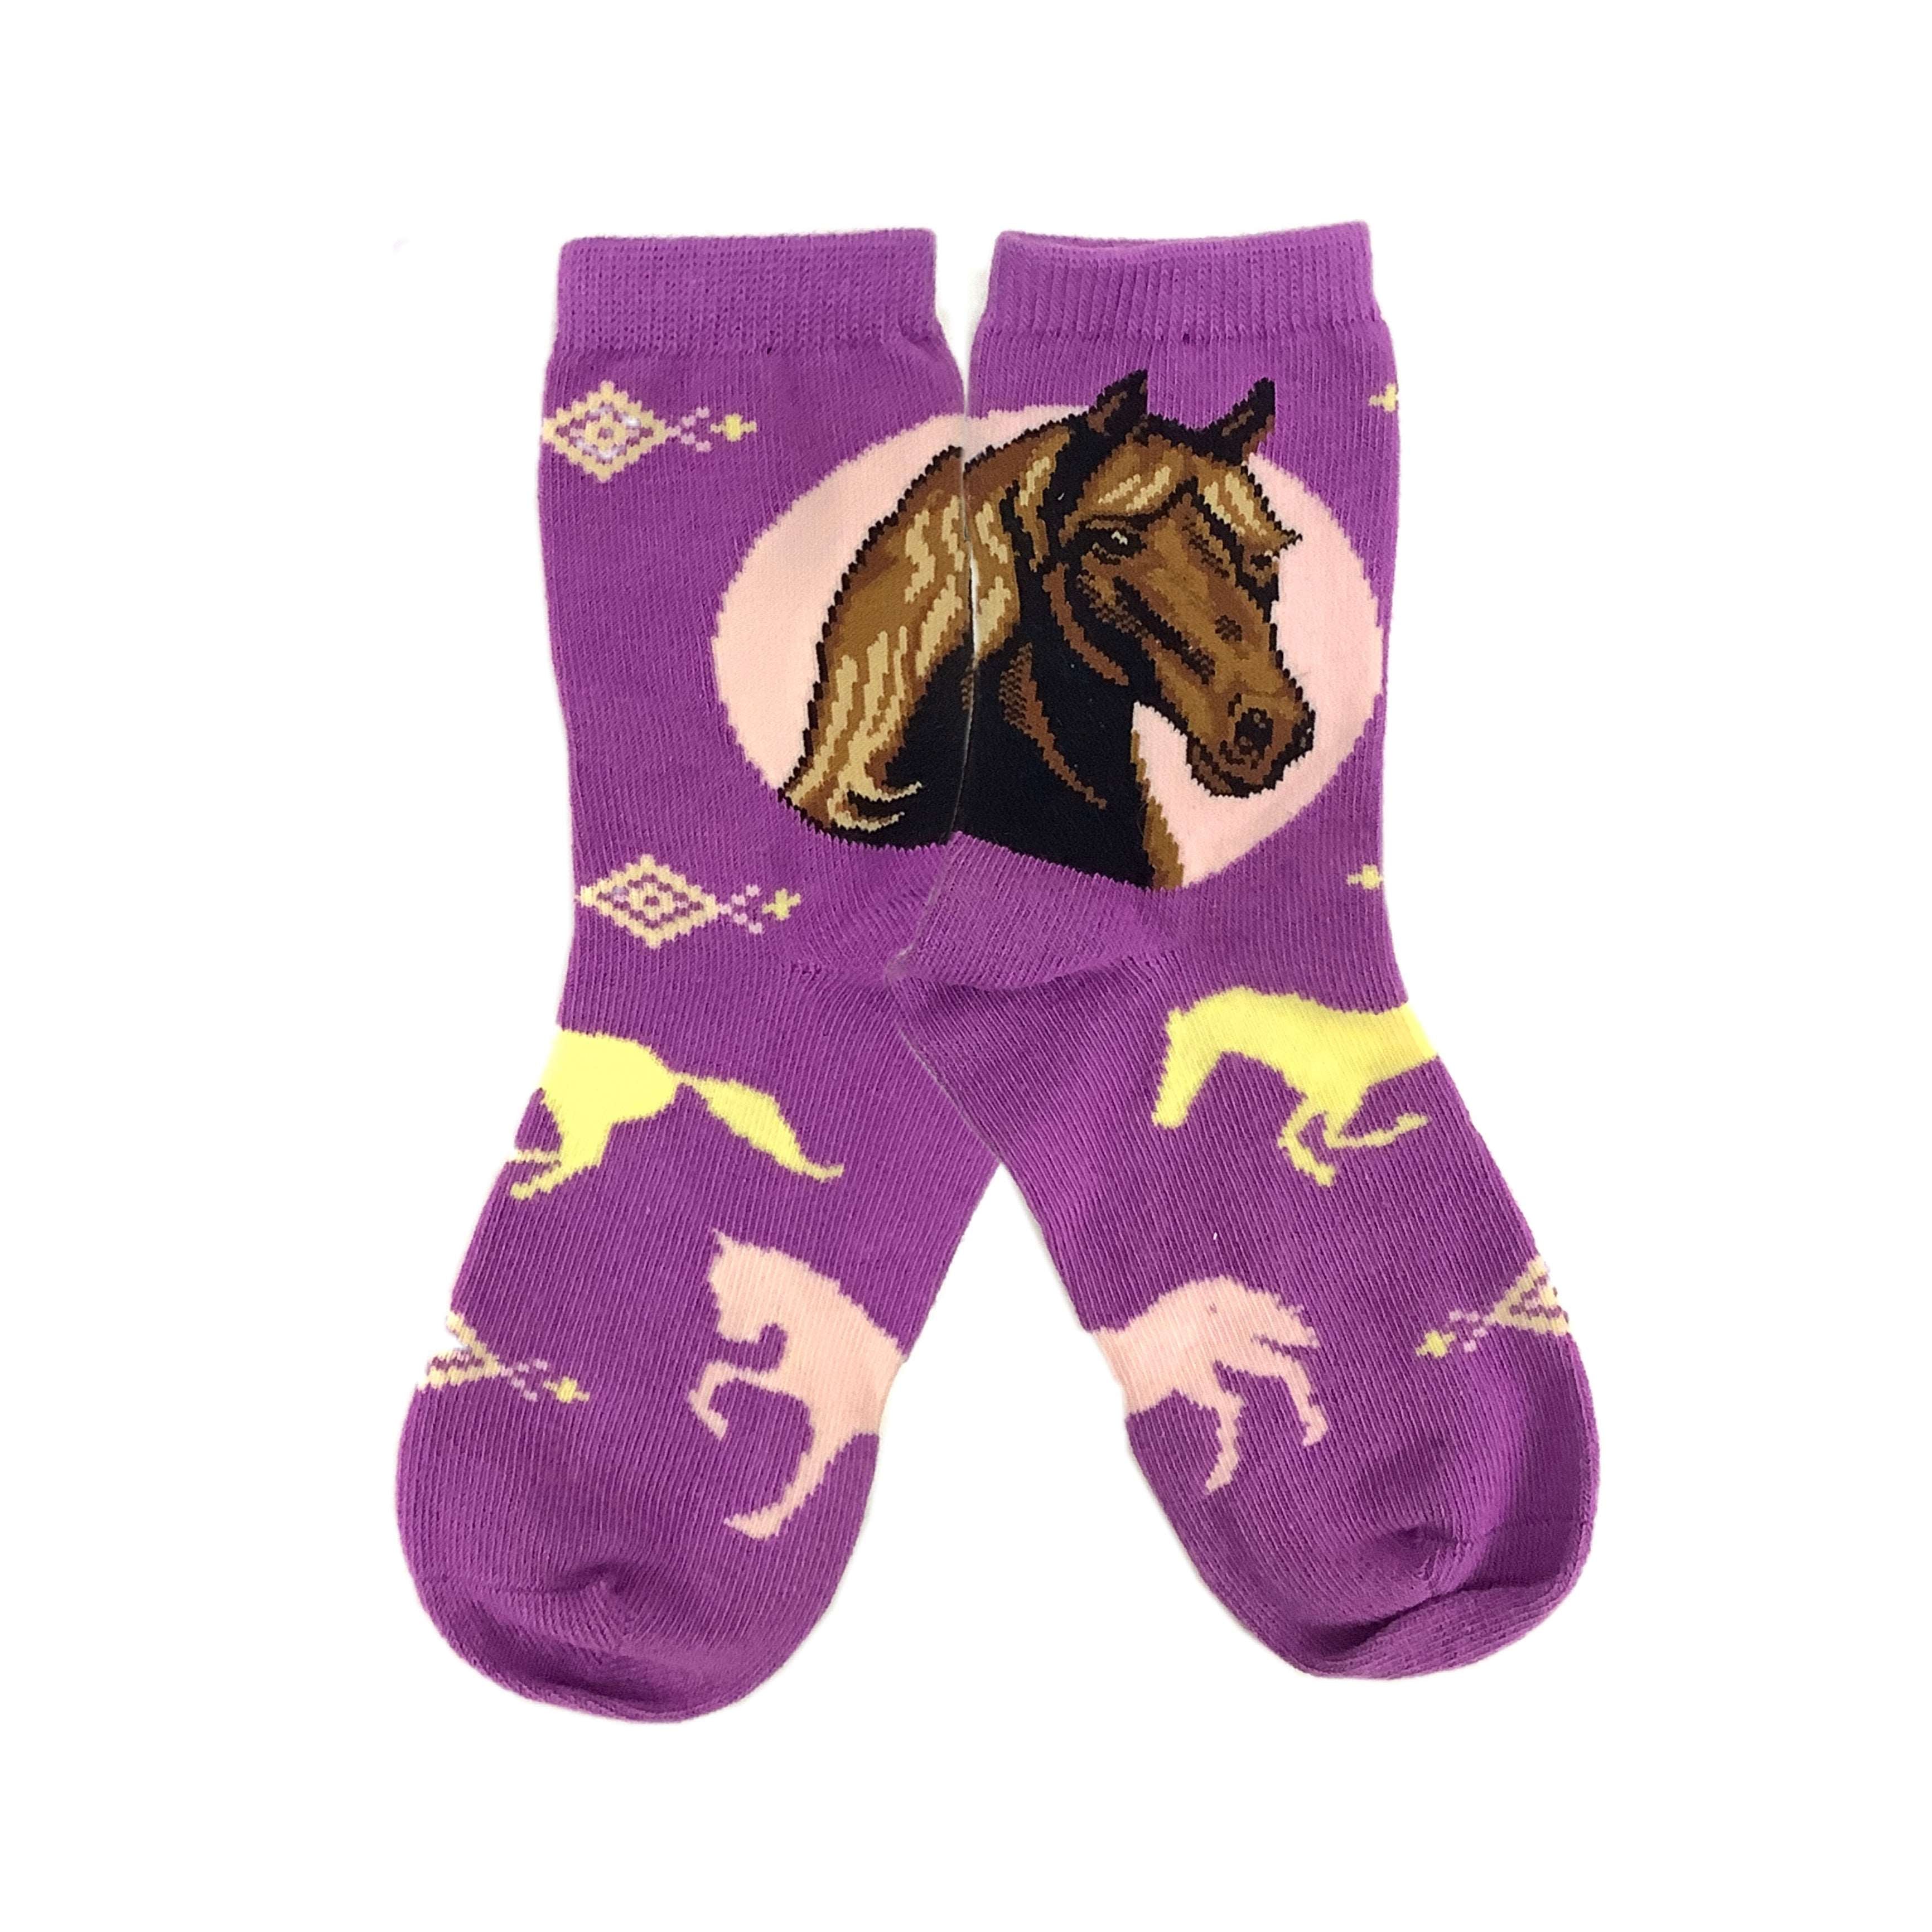 Dream Purple Pony Kids Socks (Tween size) Best Gift Ever! from Sock Panda